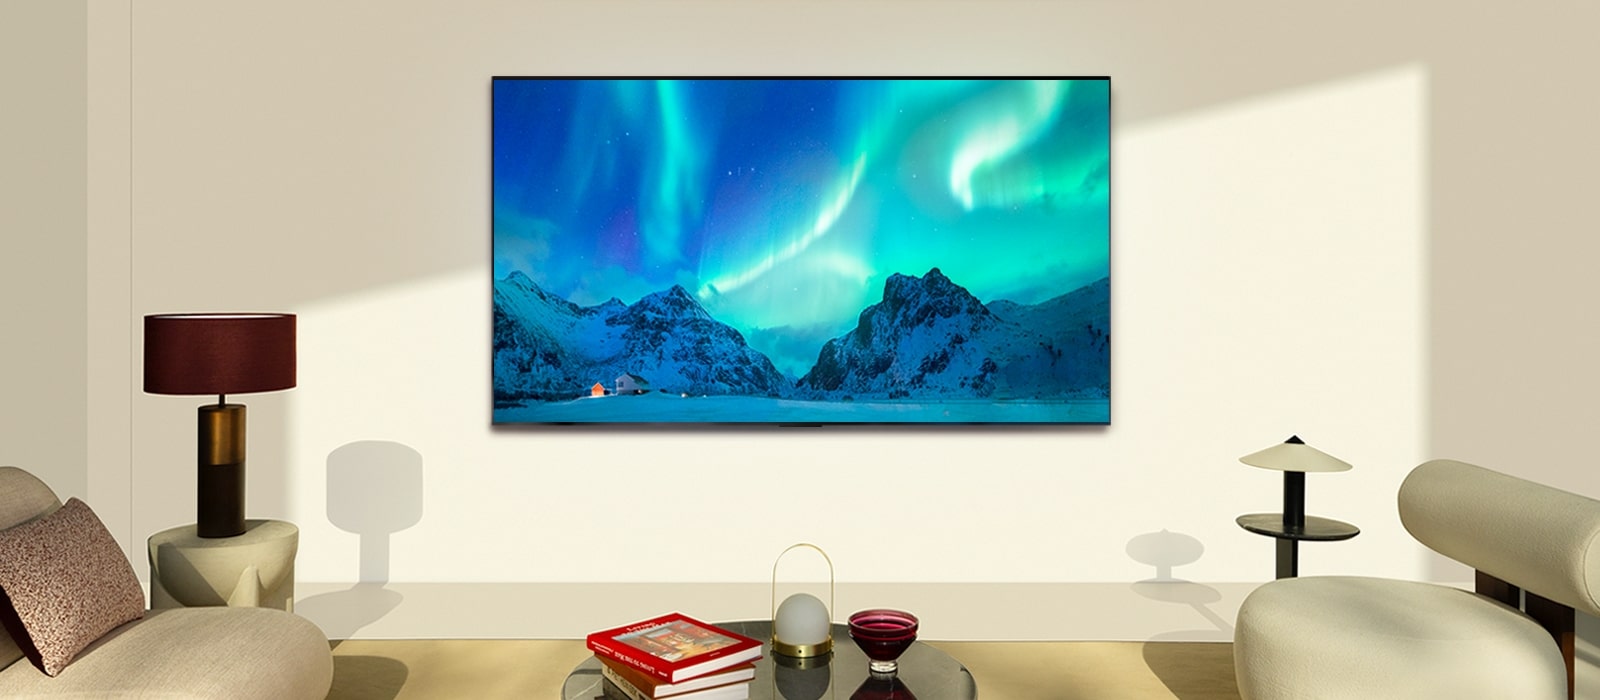 LG OLED TV in een moderne woonruimte overdag. Een schermafbeelding van aurora borealis wordt weergegeven met het ideale helderheidsniveau.